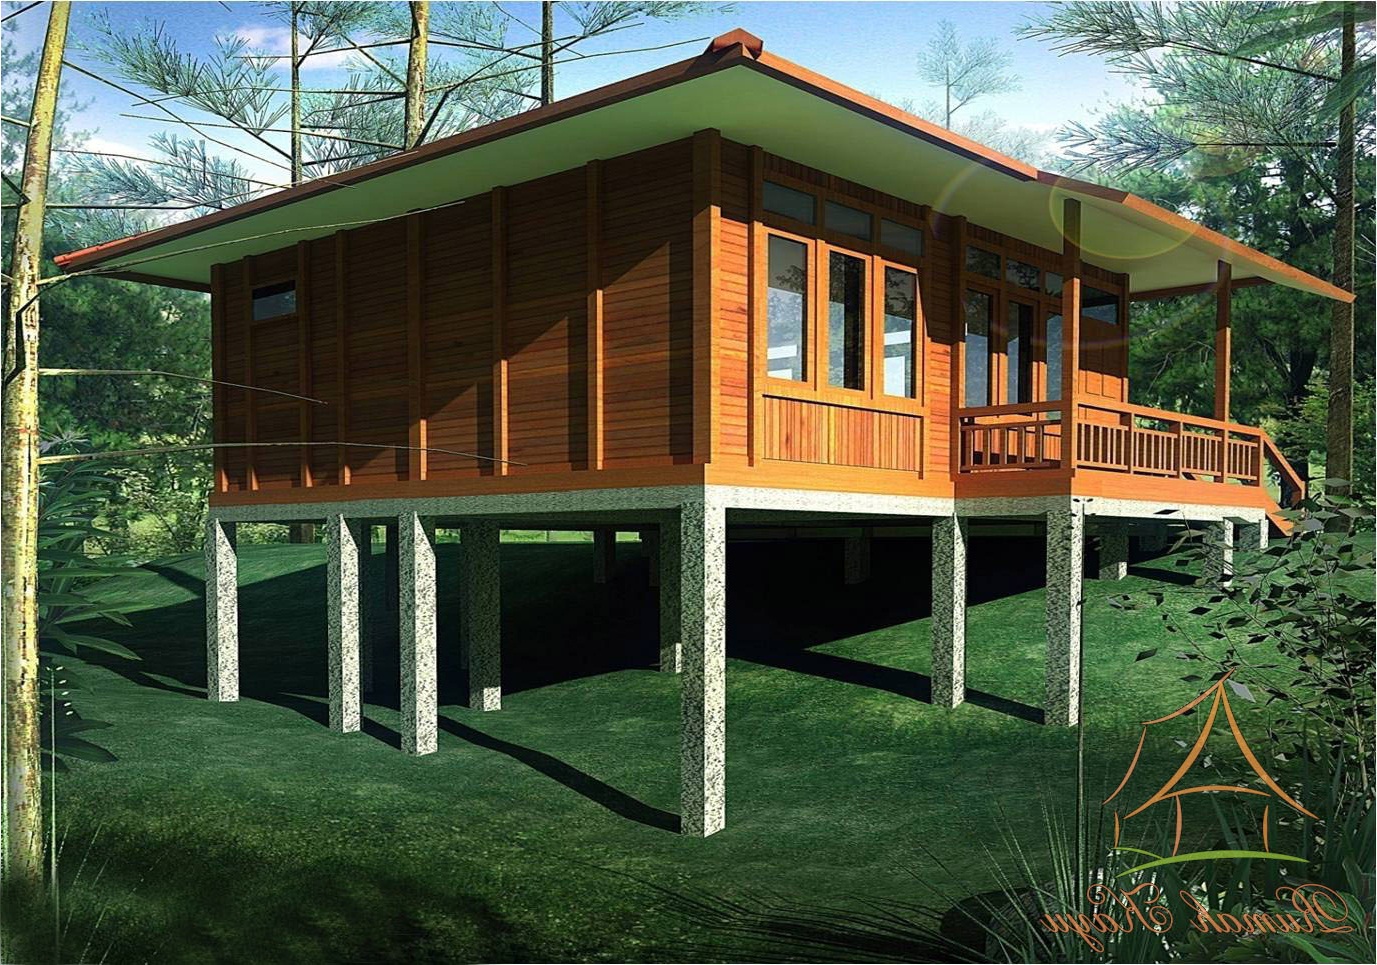 Desain Rumah Minimalis Kayu : 25 Gambar Desain Rumah Dari Kayu Jati Mewah Sederhana Modern - Desainrumah rumah 50 juta ide desain rumah kayu semi permanen komposisi ruang :